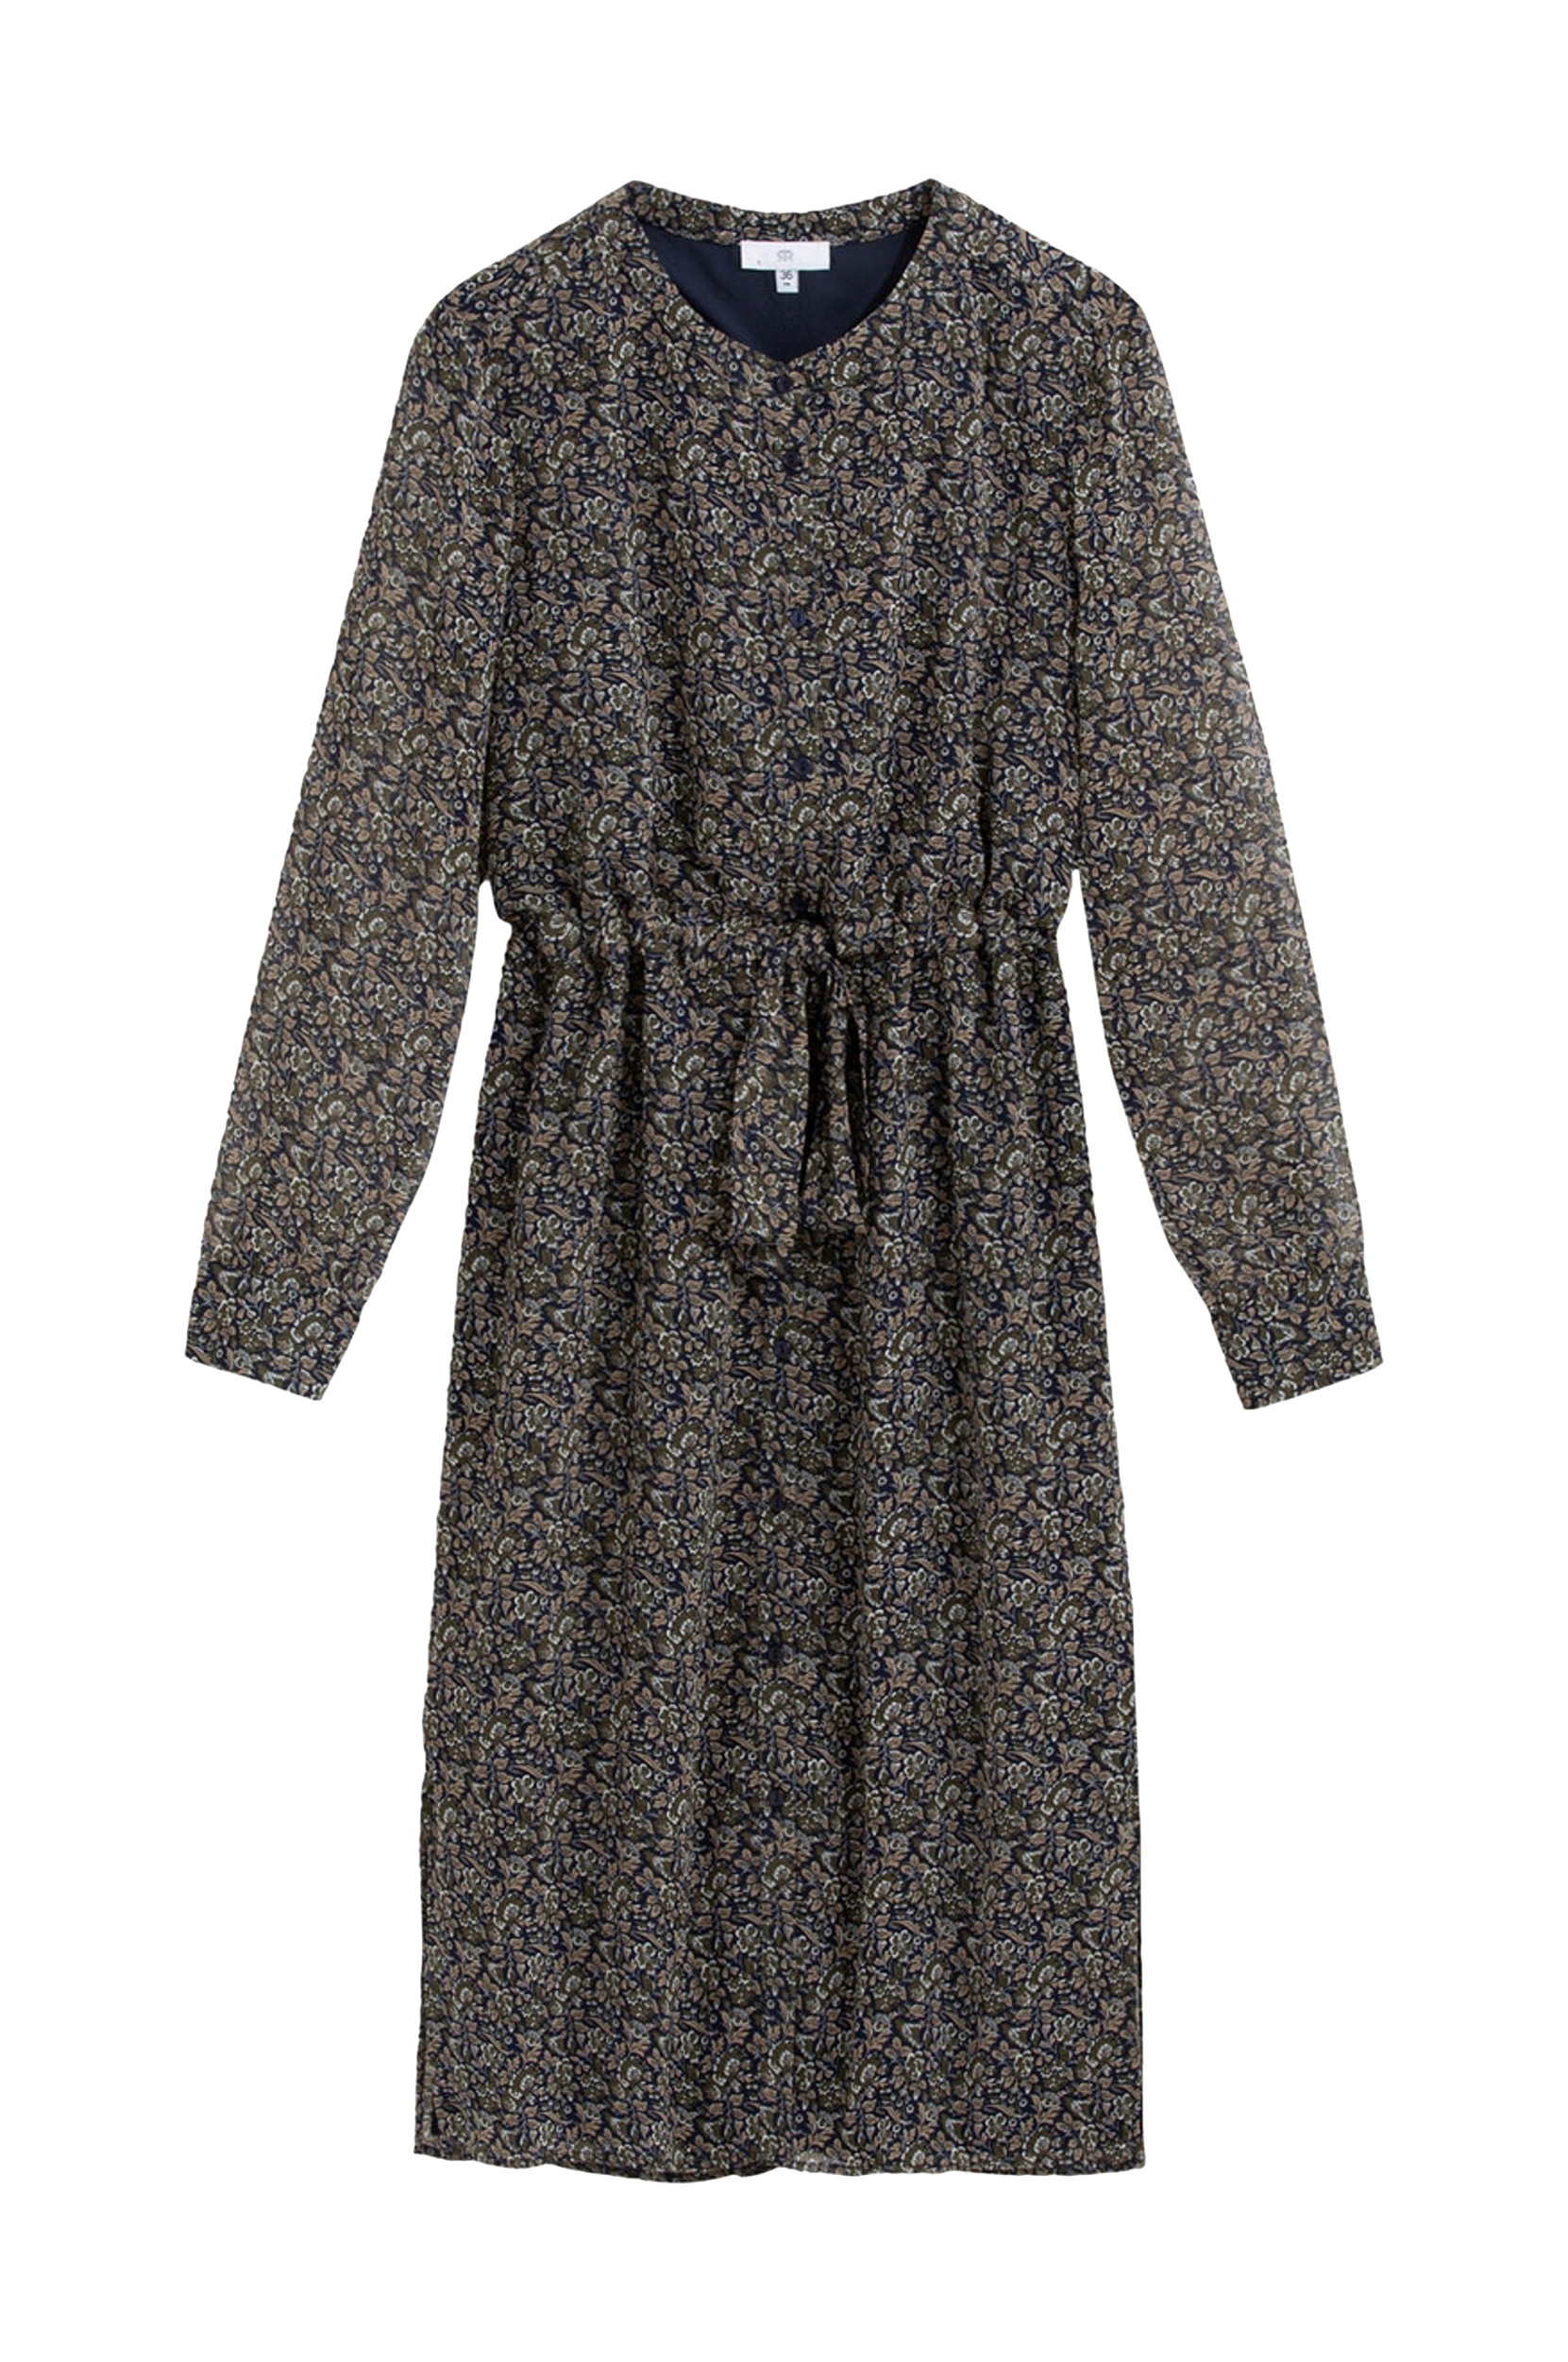 La Redoute - Mønstret kjole med lukning foran - Blå - 38